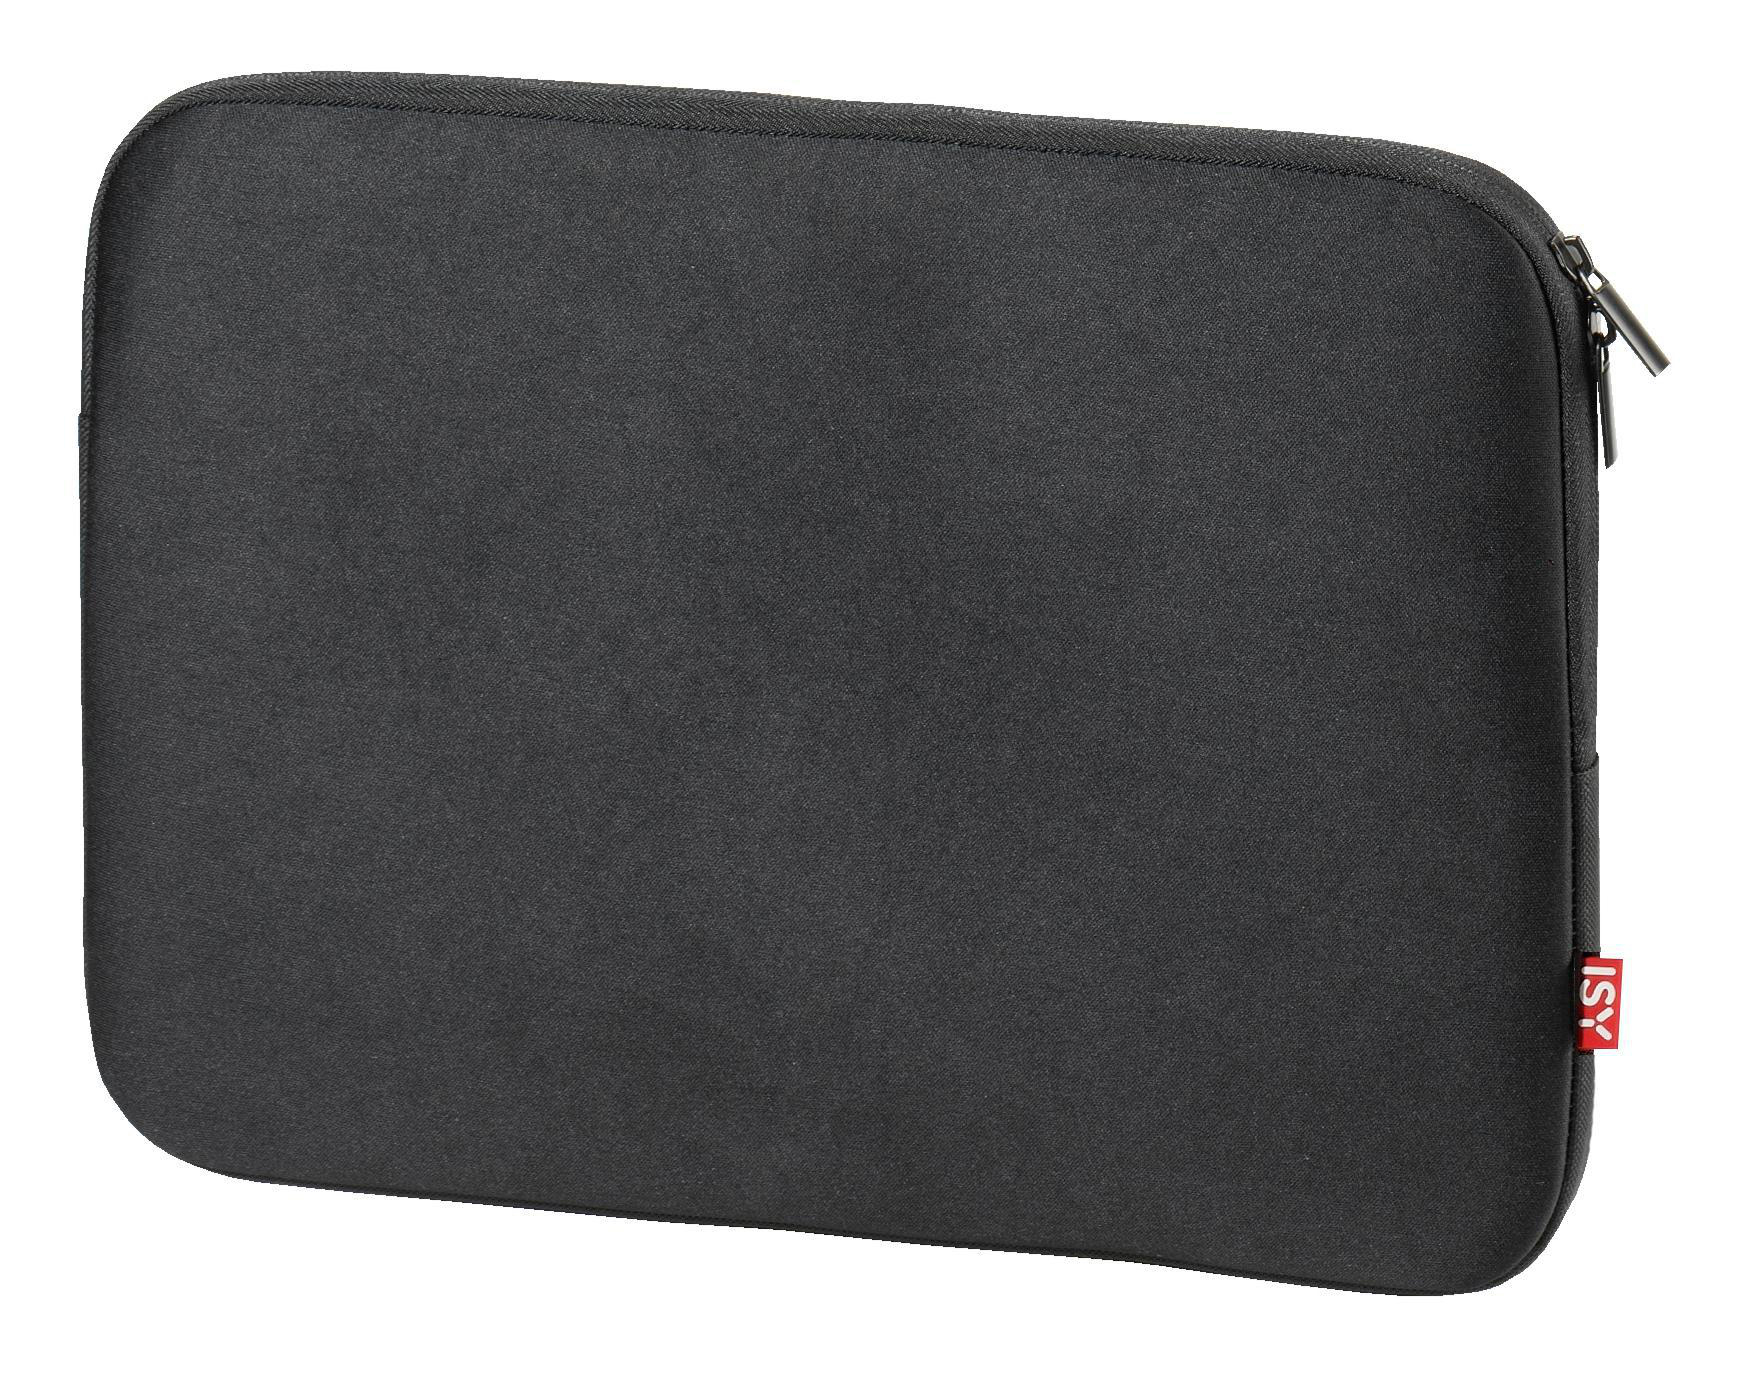 ISY INB-750 Notebooktasche Sleeve Schwarz für Universal Neopren